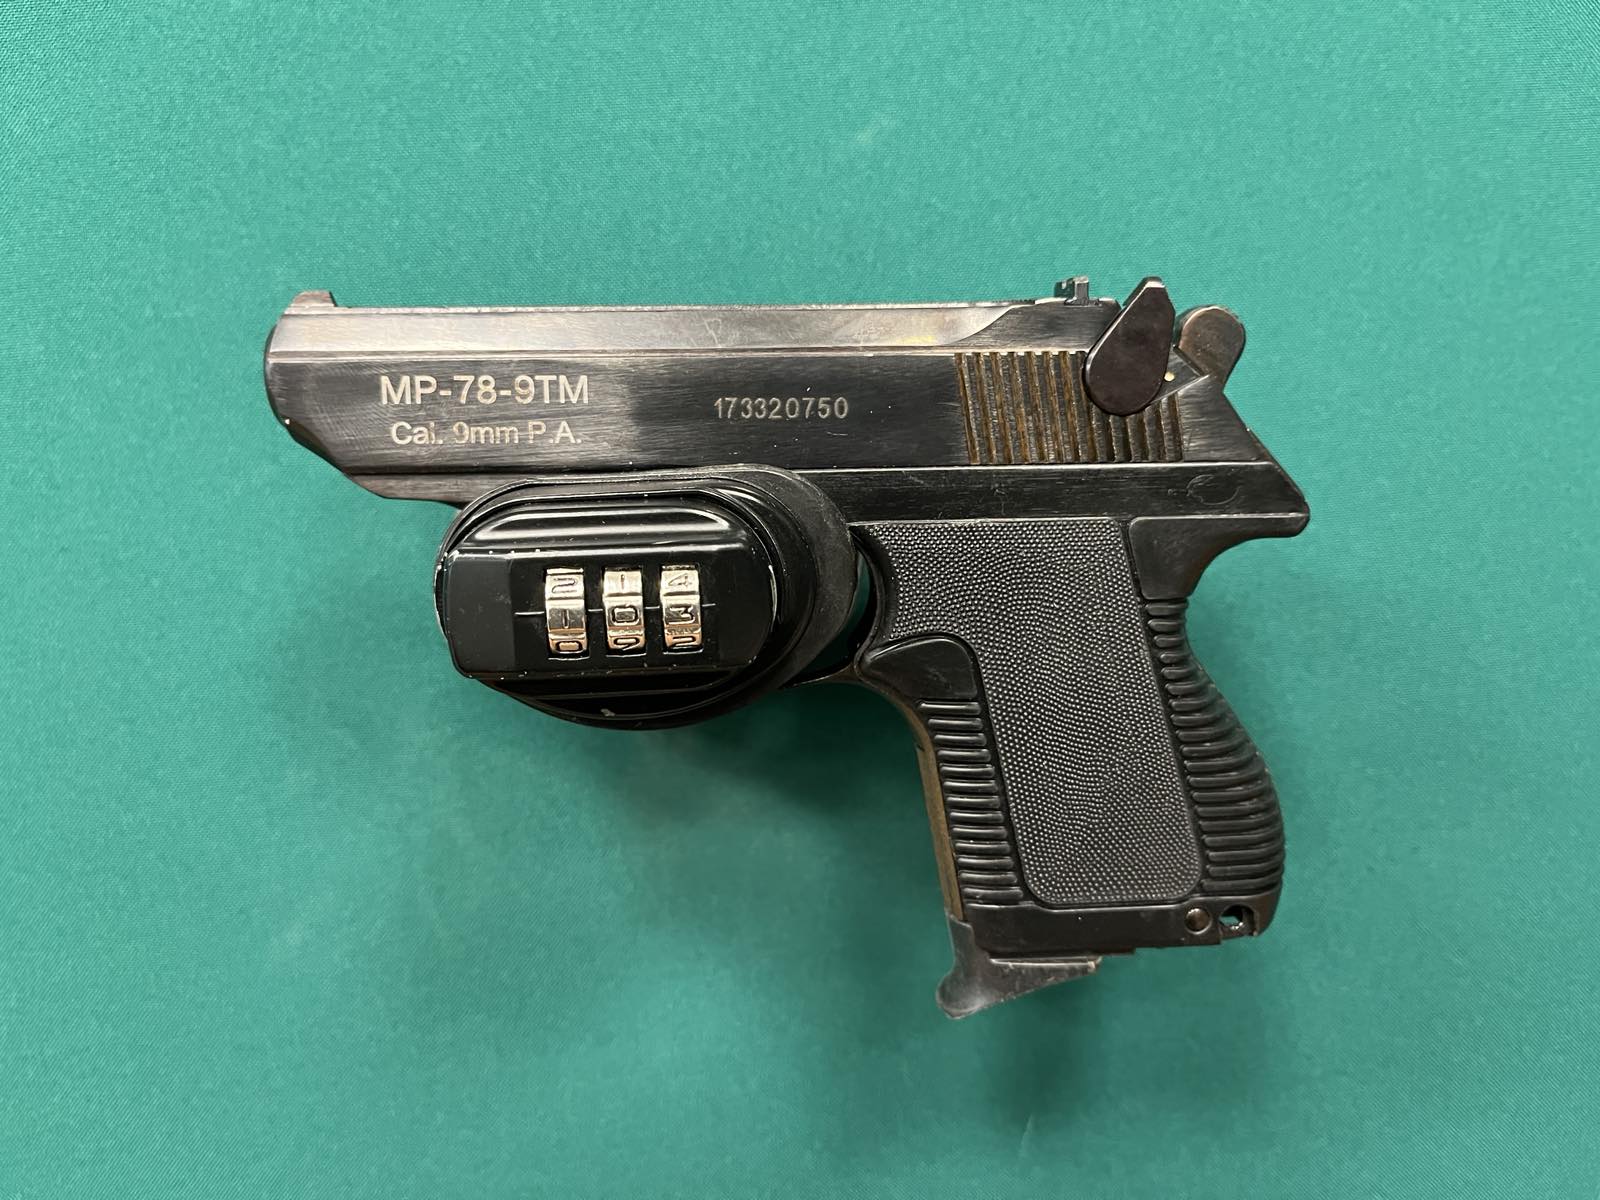 Пистолет МР-78-9ТМ, калибр 9мм РА, ООП